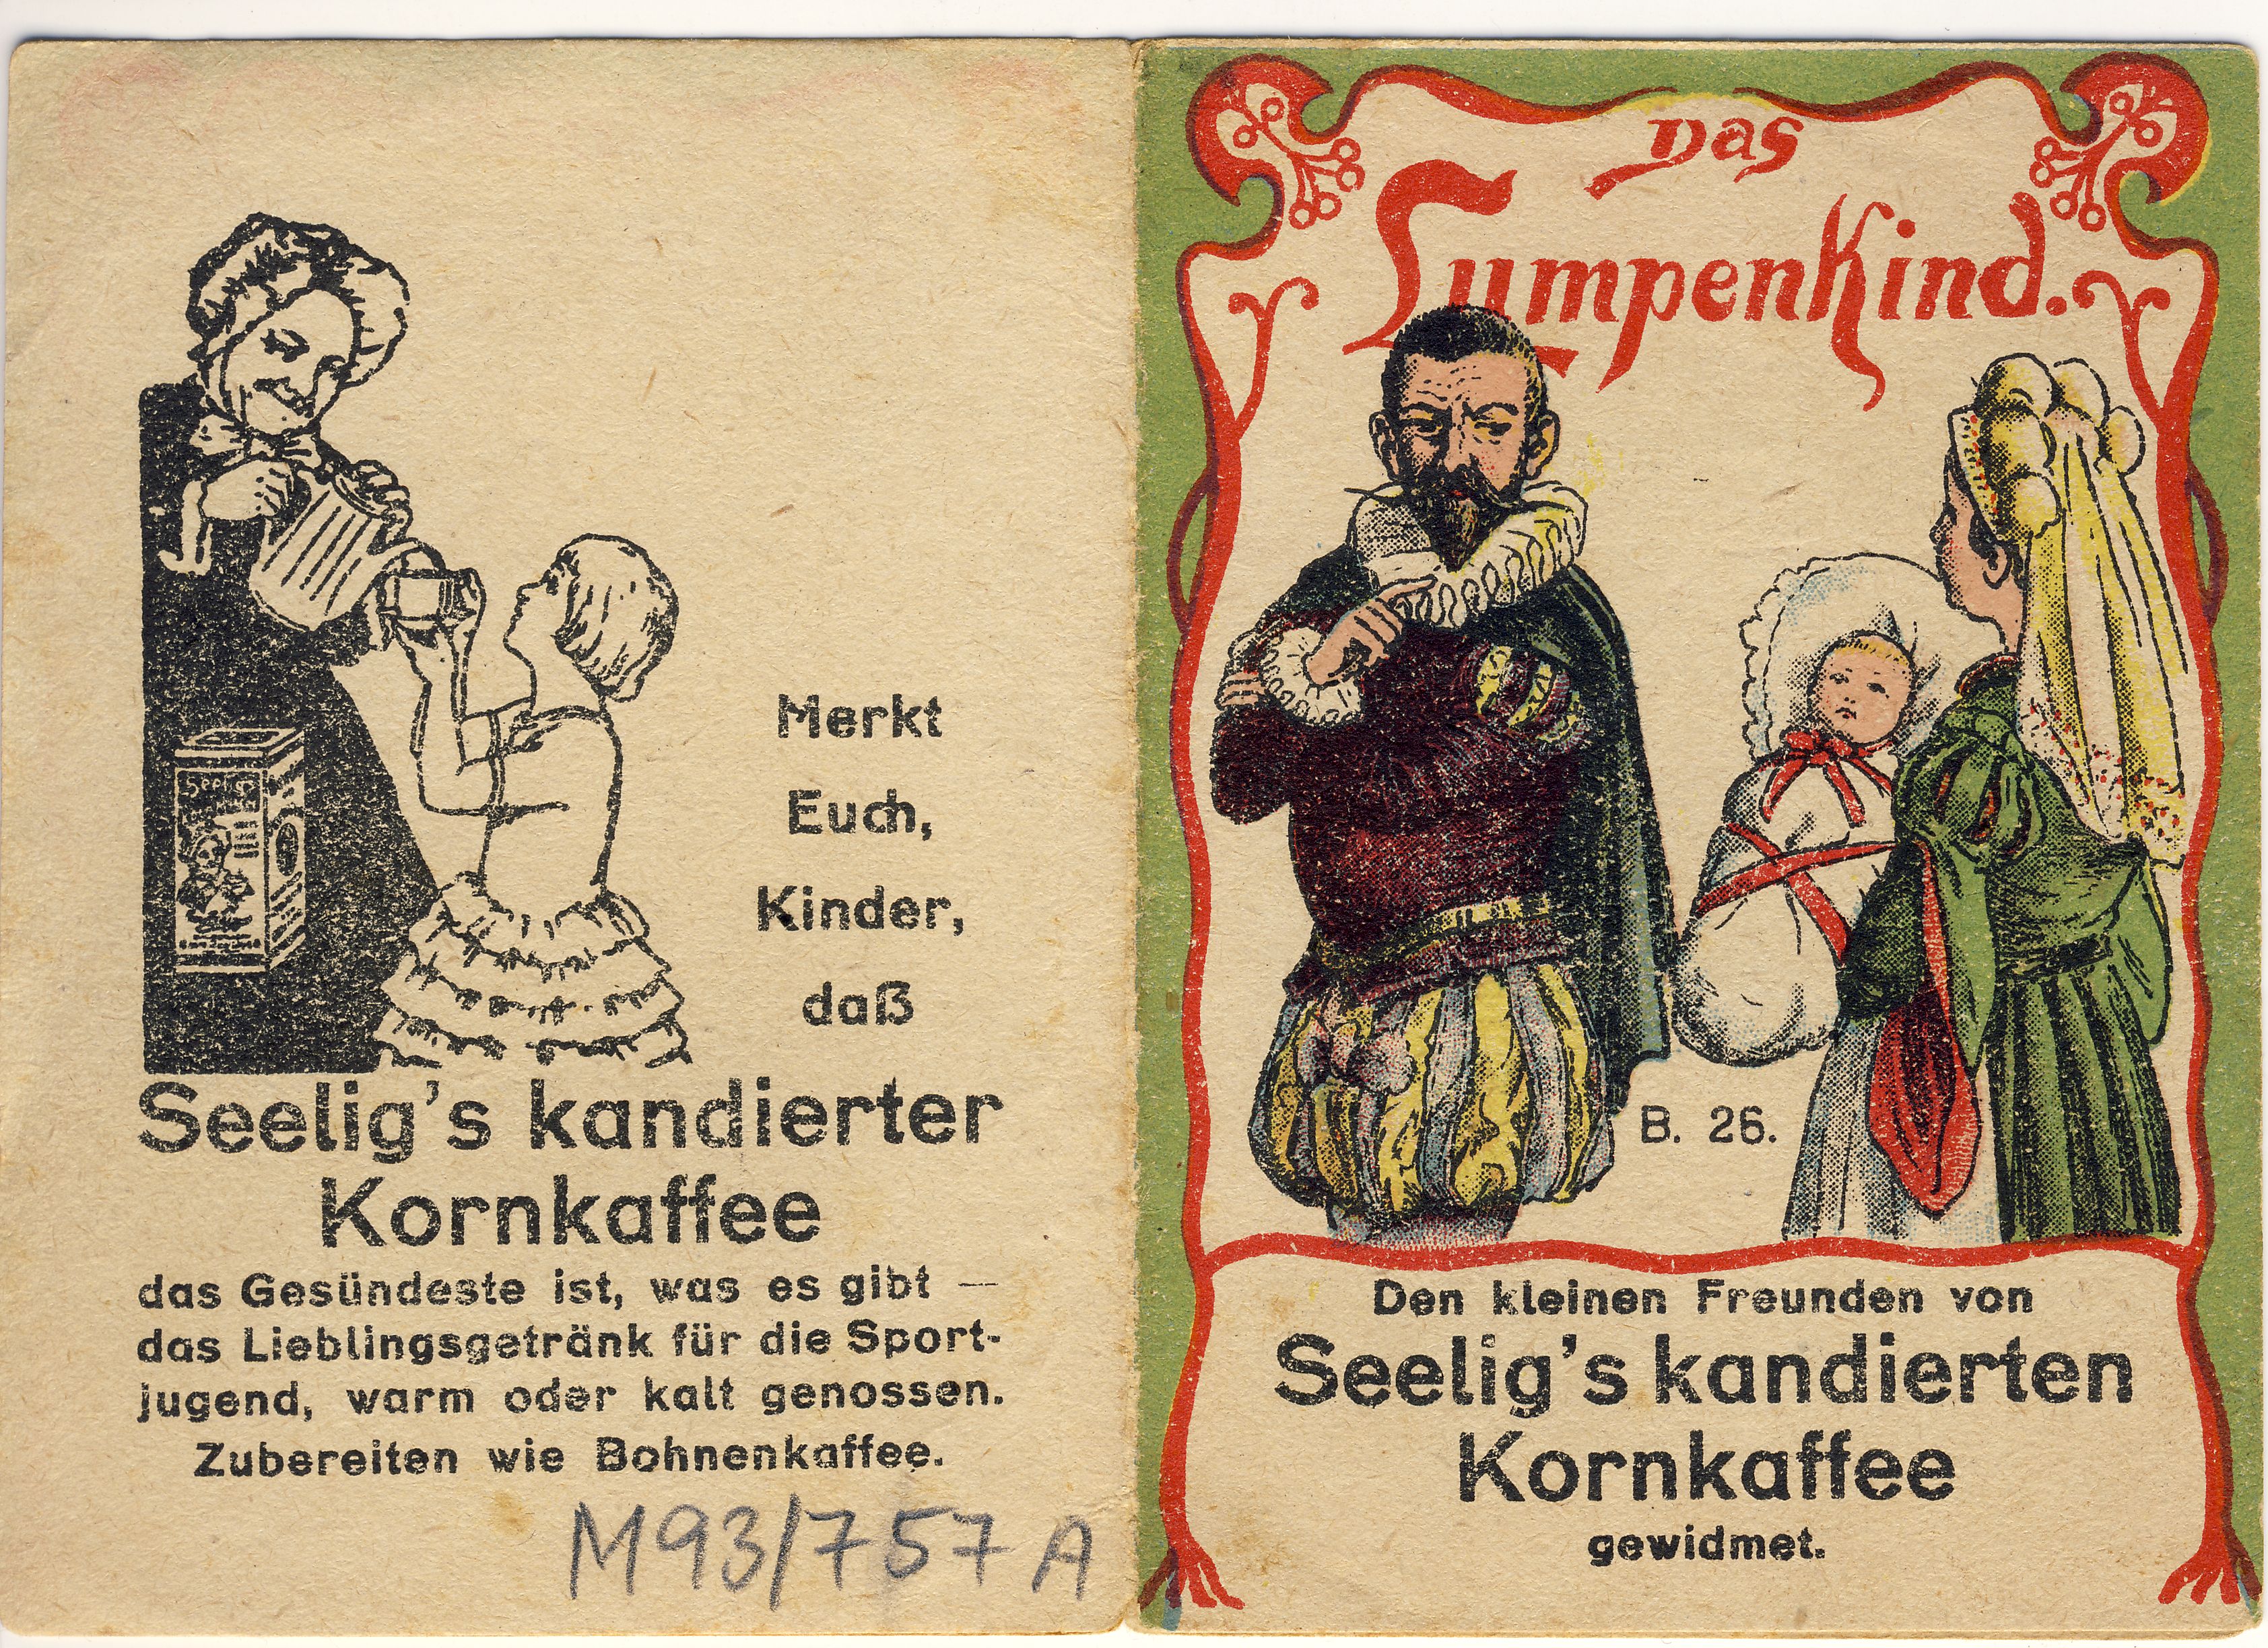 Das Lumpenkind Märchensammelheft (Deutsches Märchen- und Wesersagenmuseum CC BY-NC-SA)